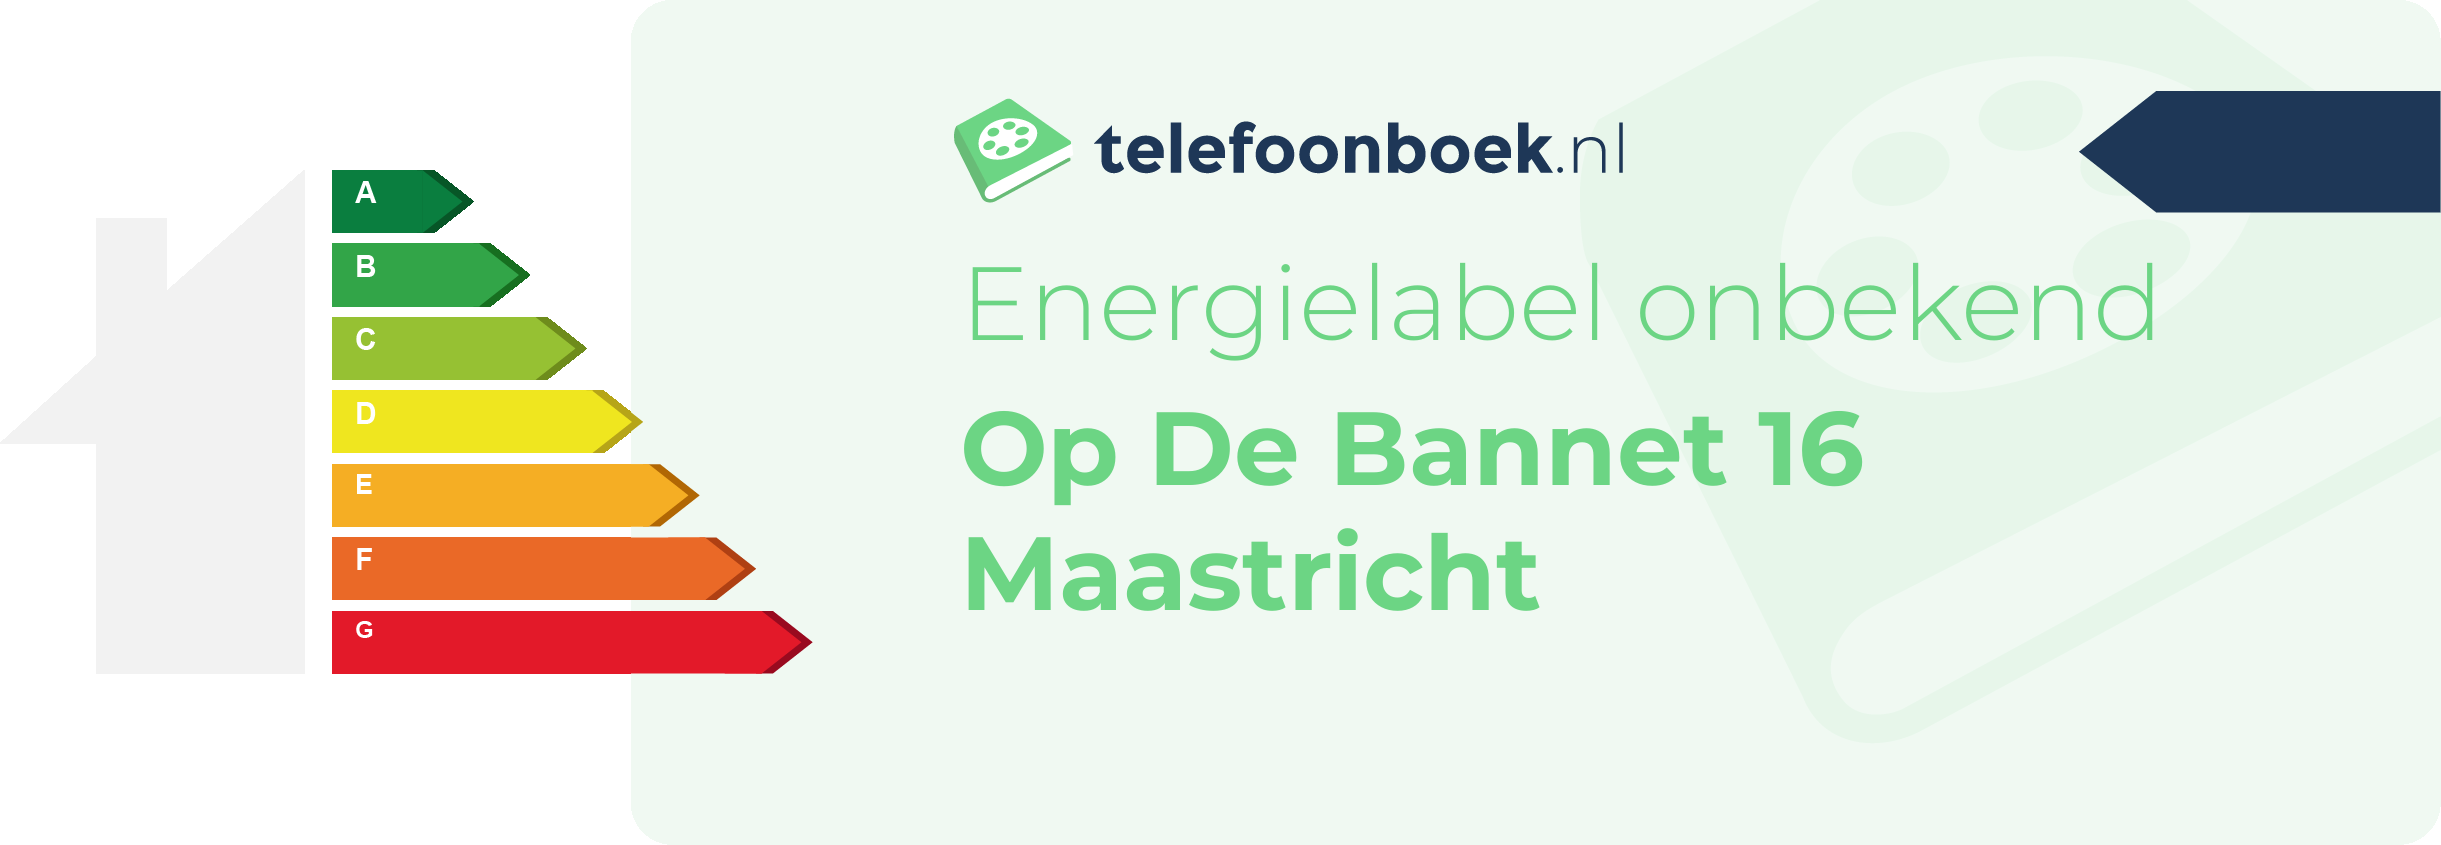 Energielabel Op De Bannet 16 Maastricht